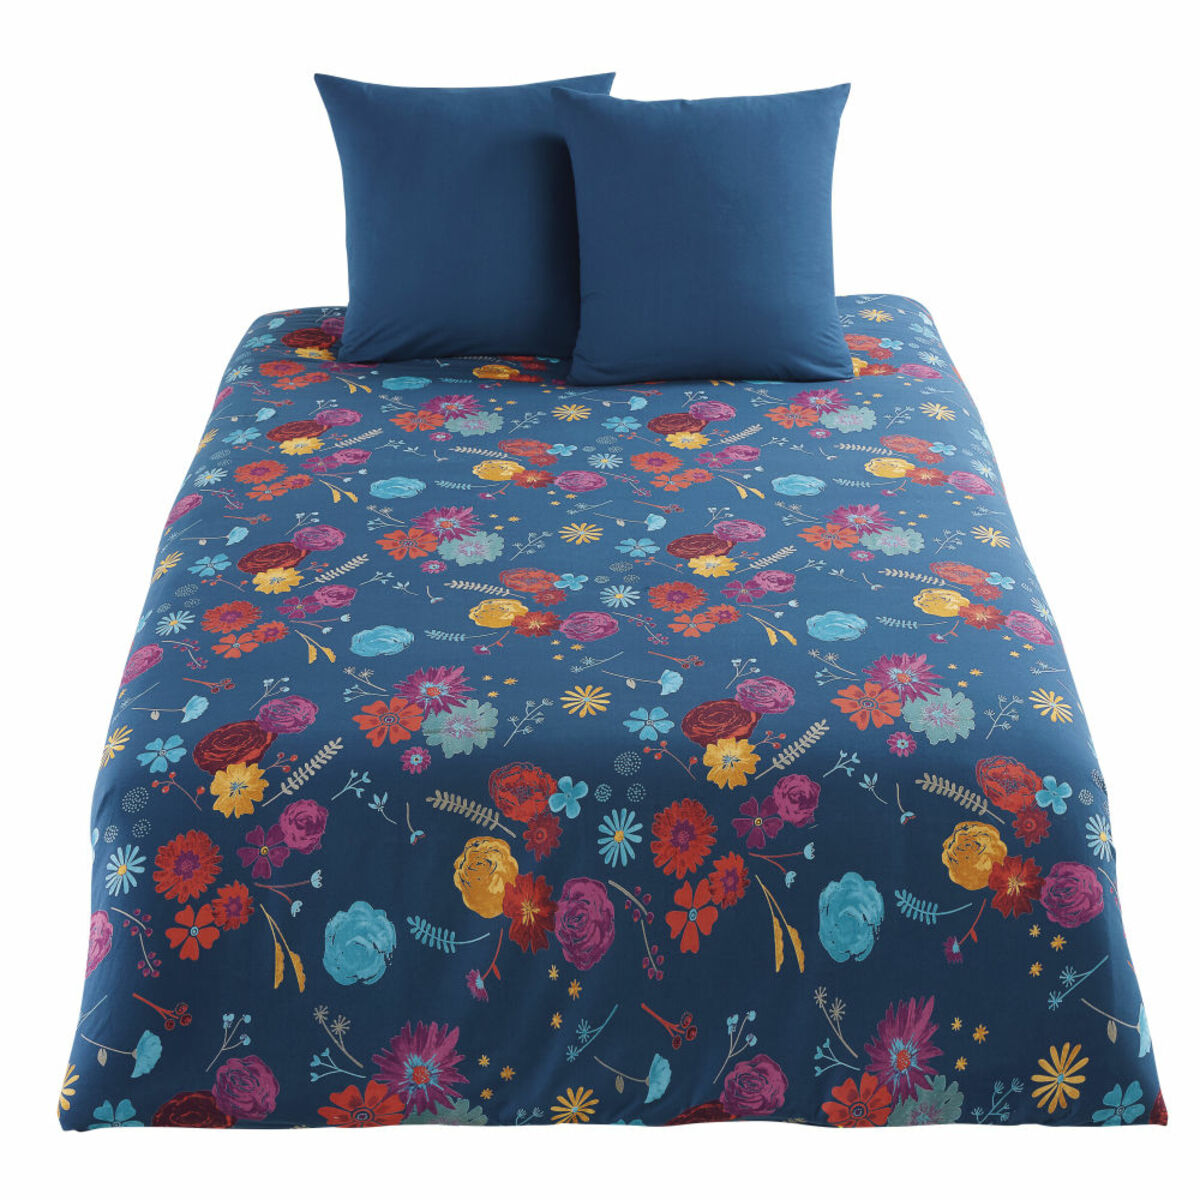 Parure de lit en coton bleu pétrole motif floral multicolore 240x260